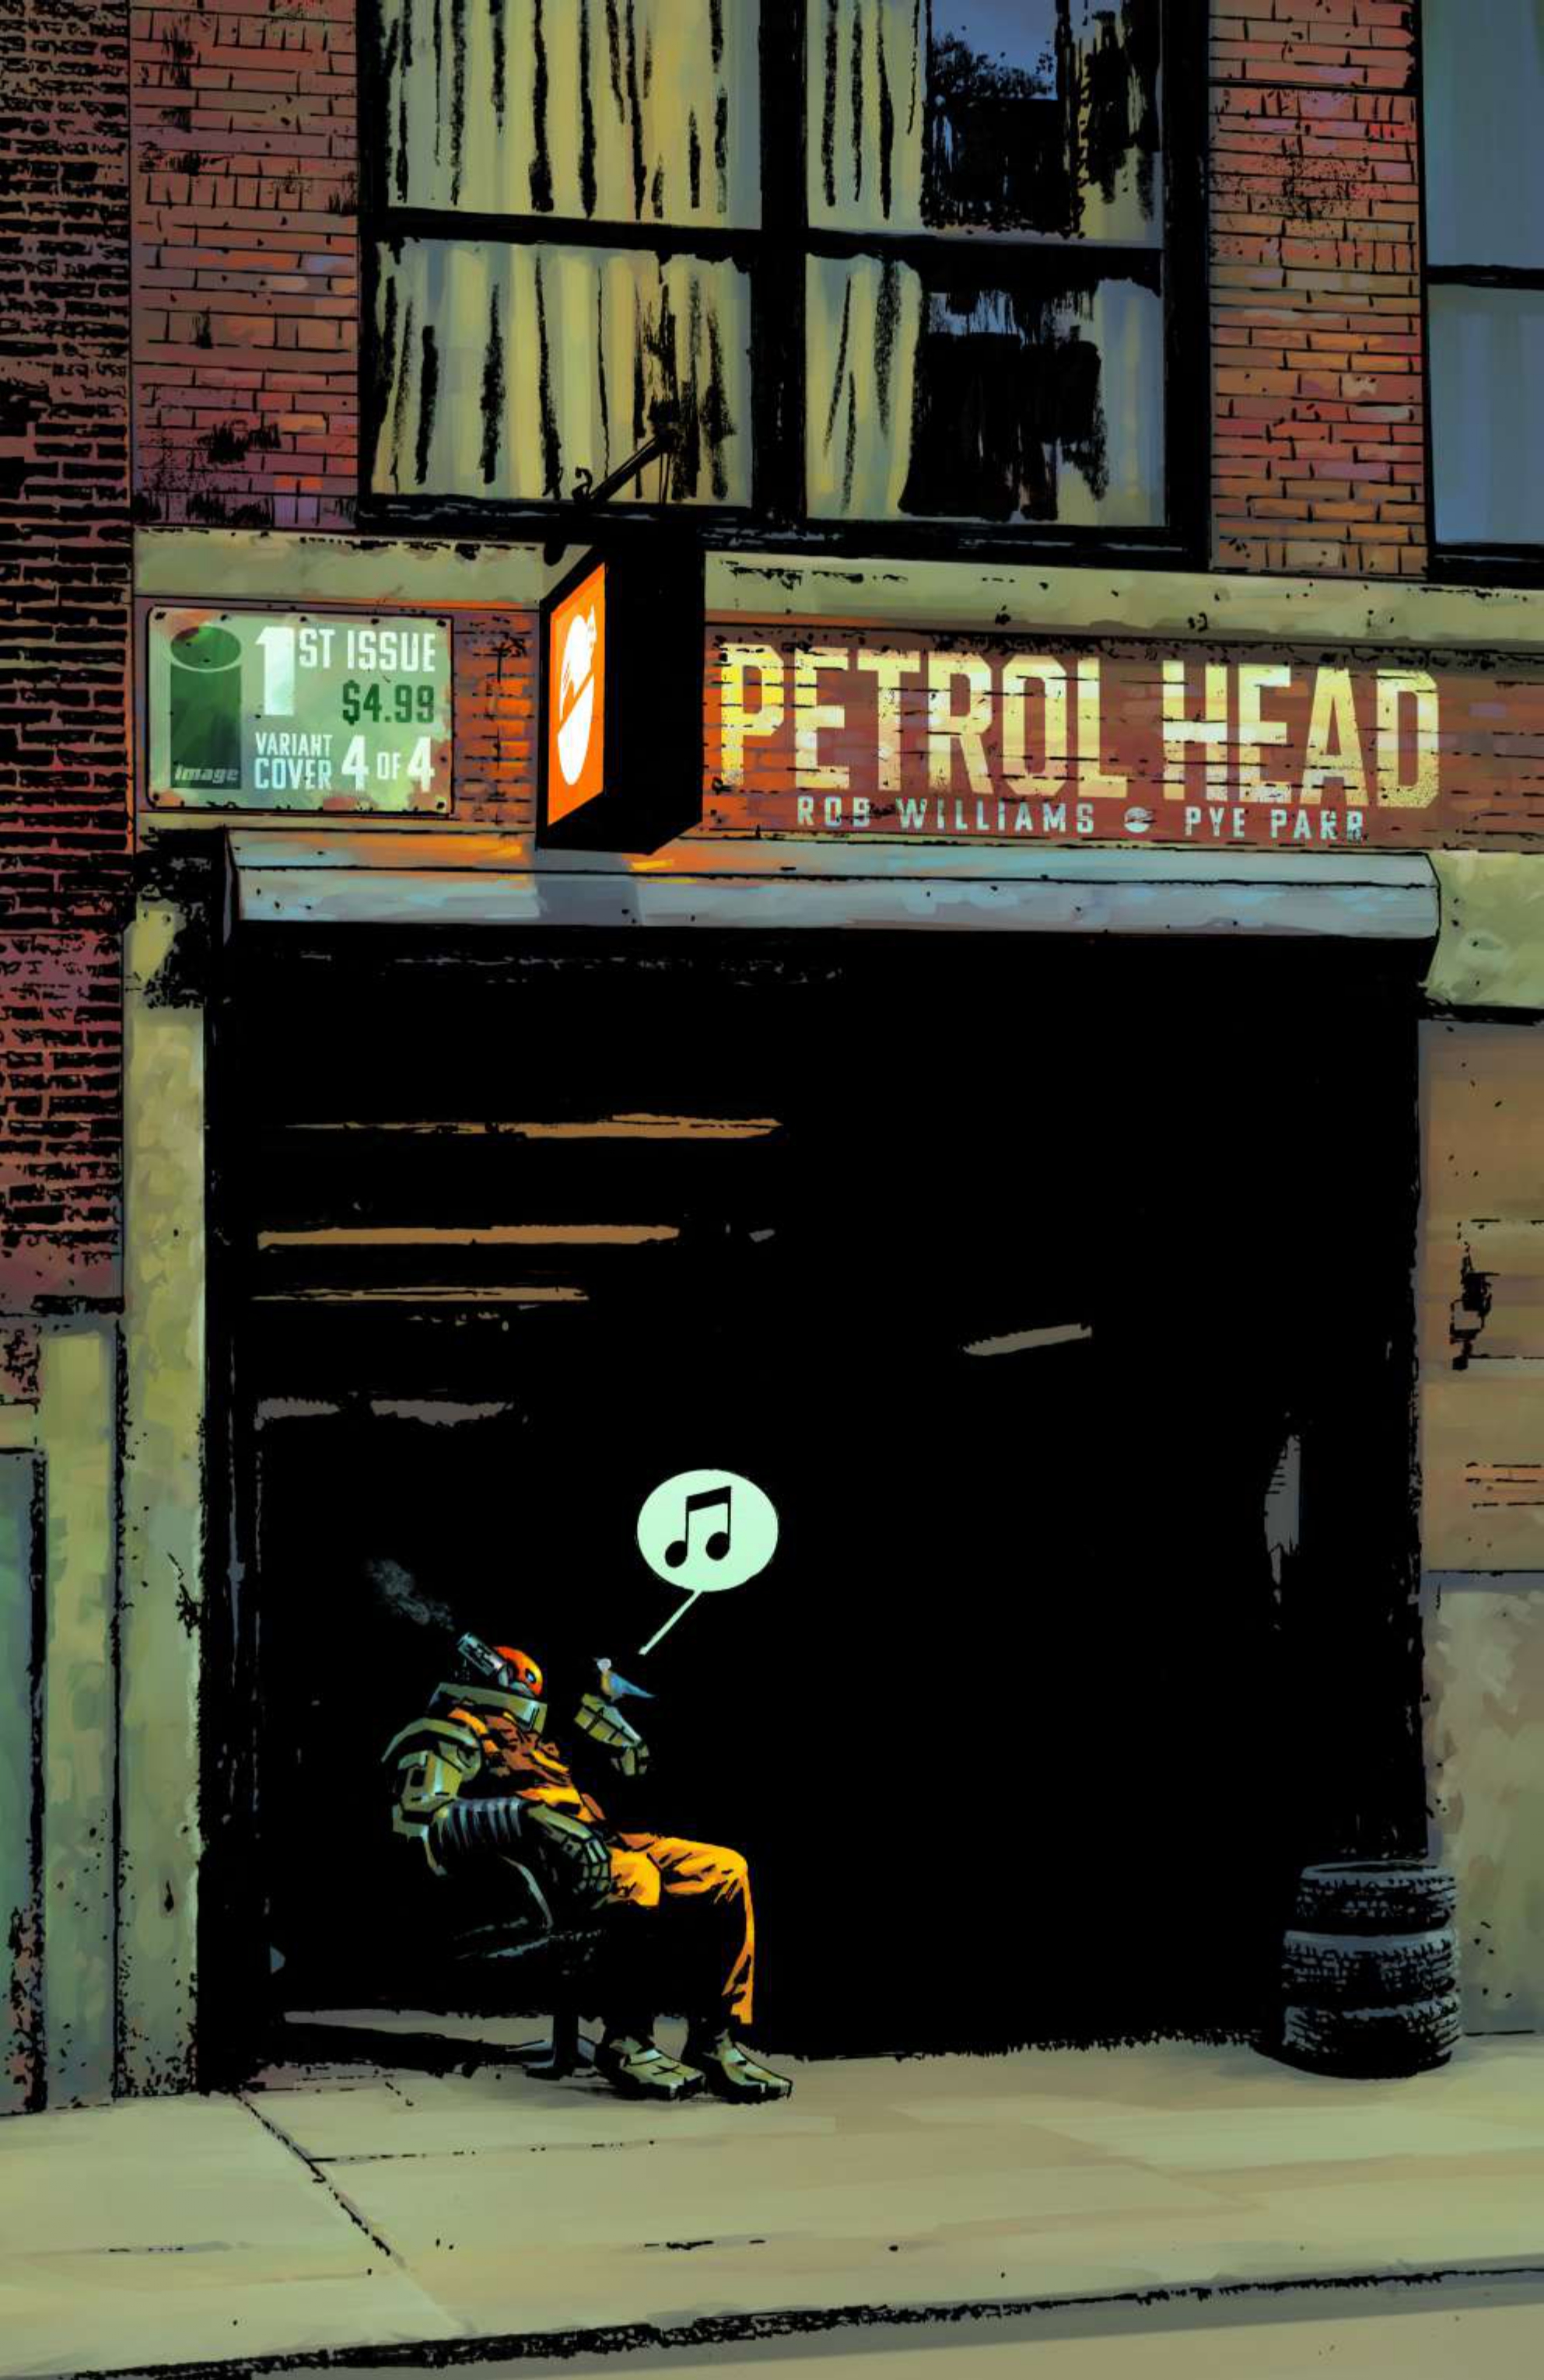 Arte de Petrol Head #1